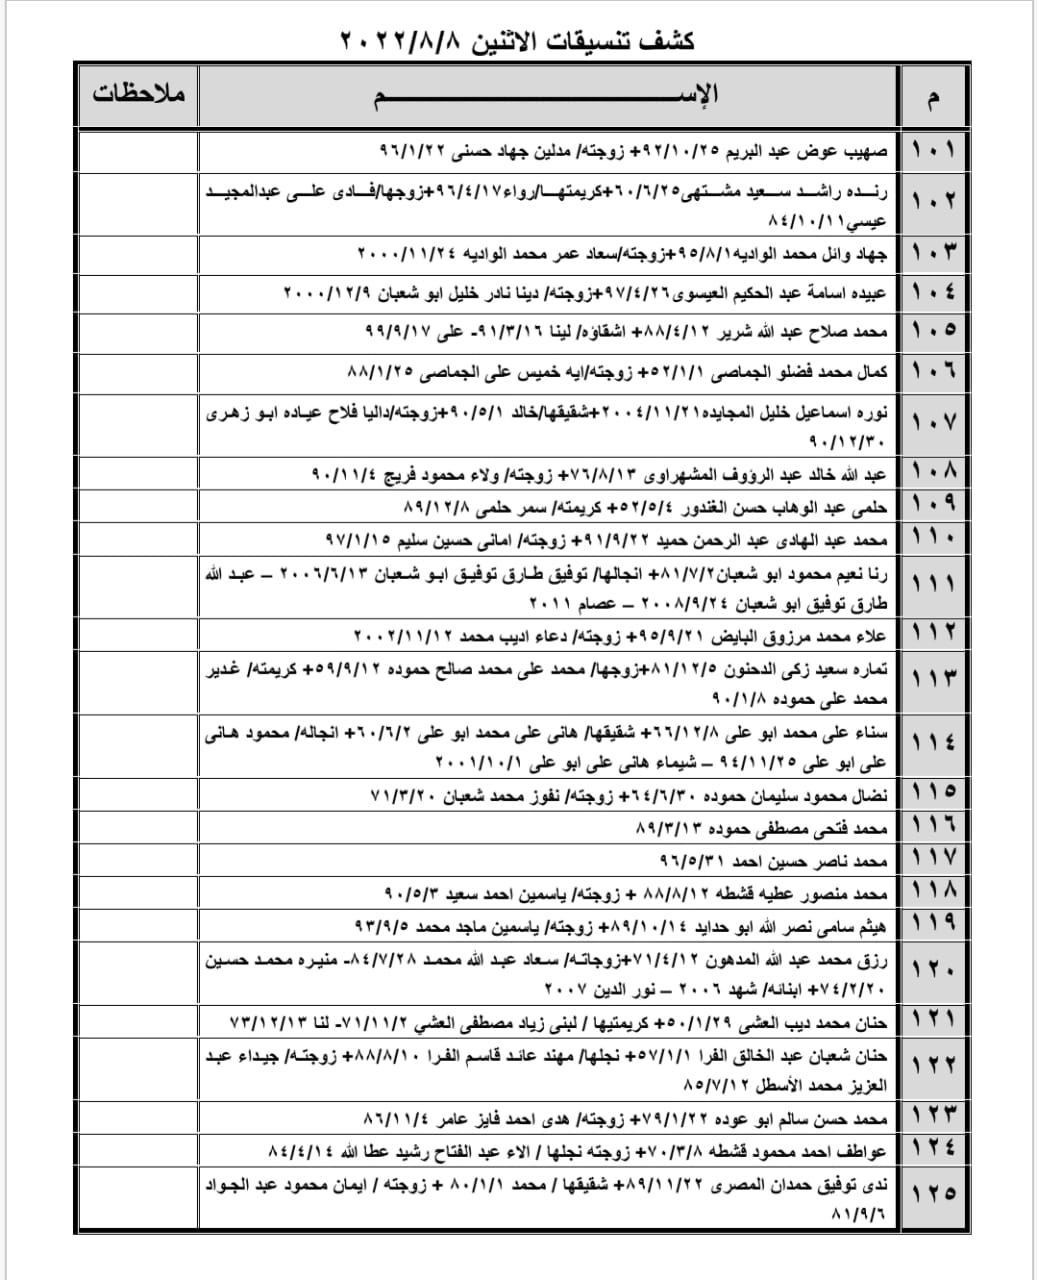 بالأسماء: كشف "تنسيقات مصرية" للسفر عبر معبر رفح غدًا الإثنين 8 أغسطس 2022